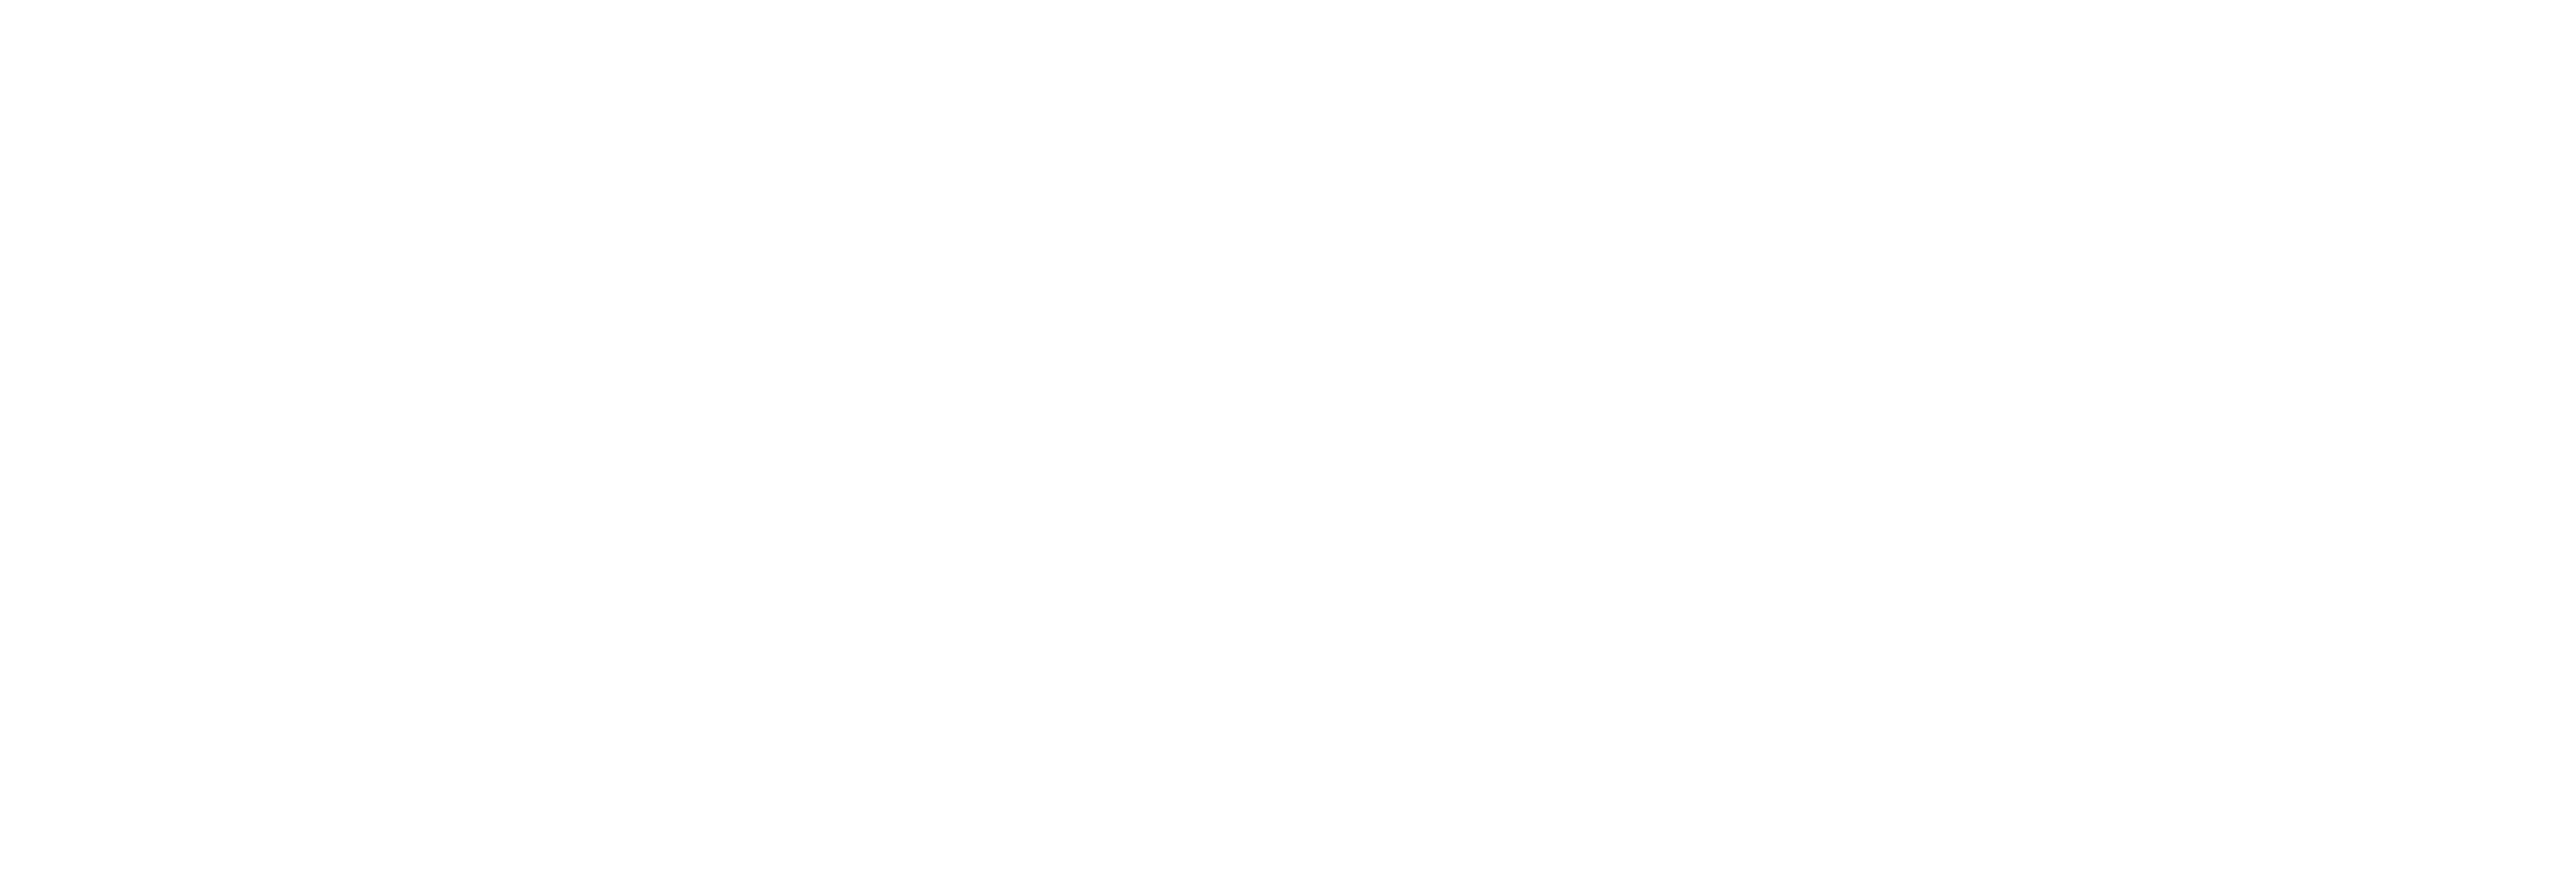 crossU logo white